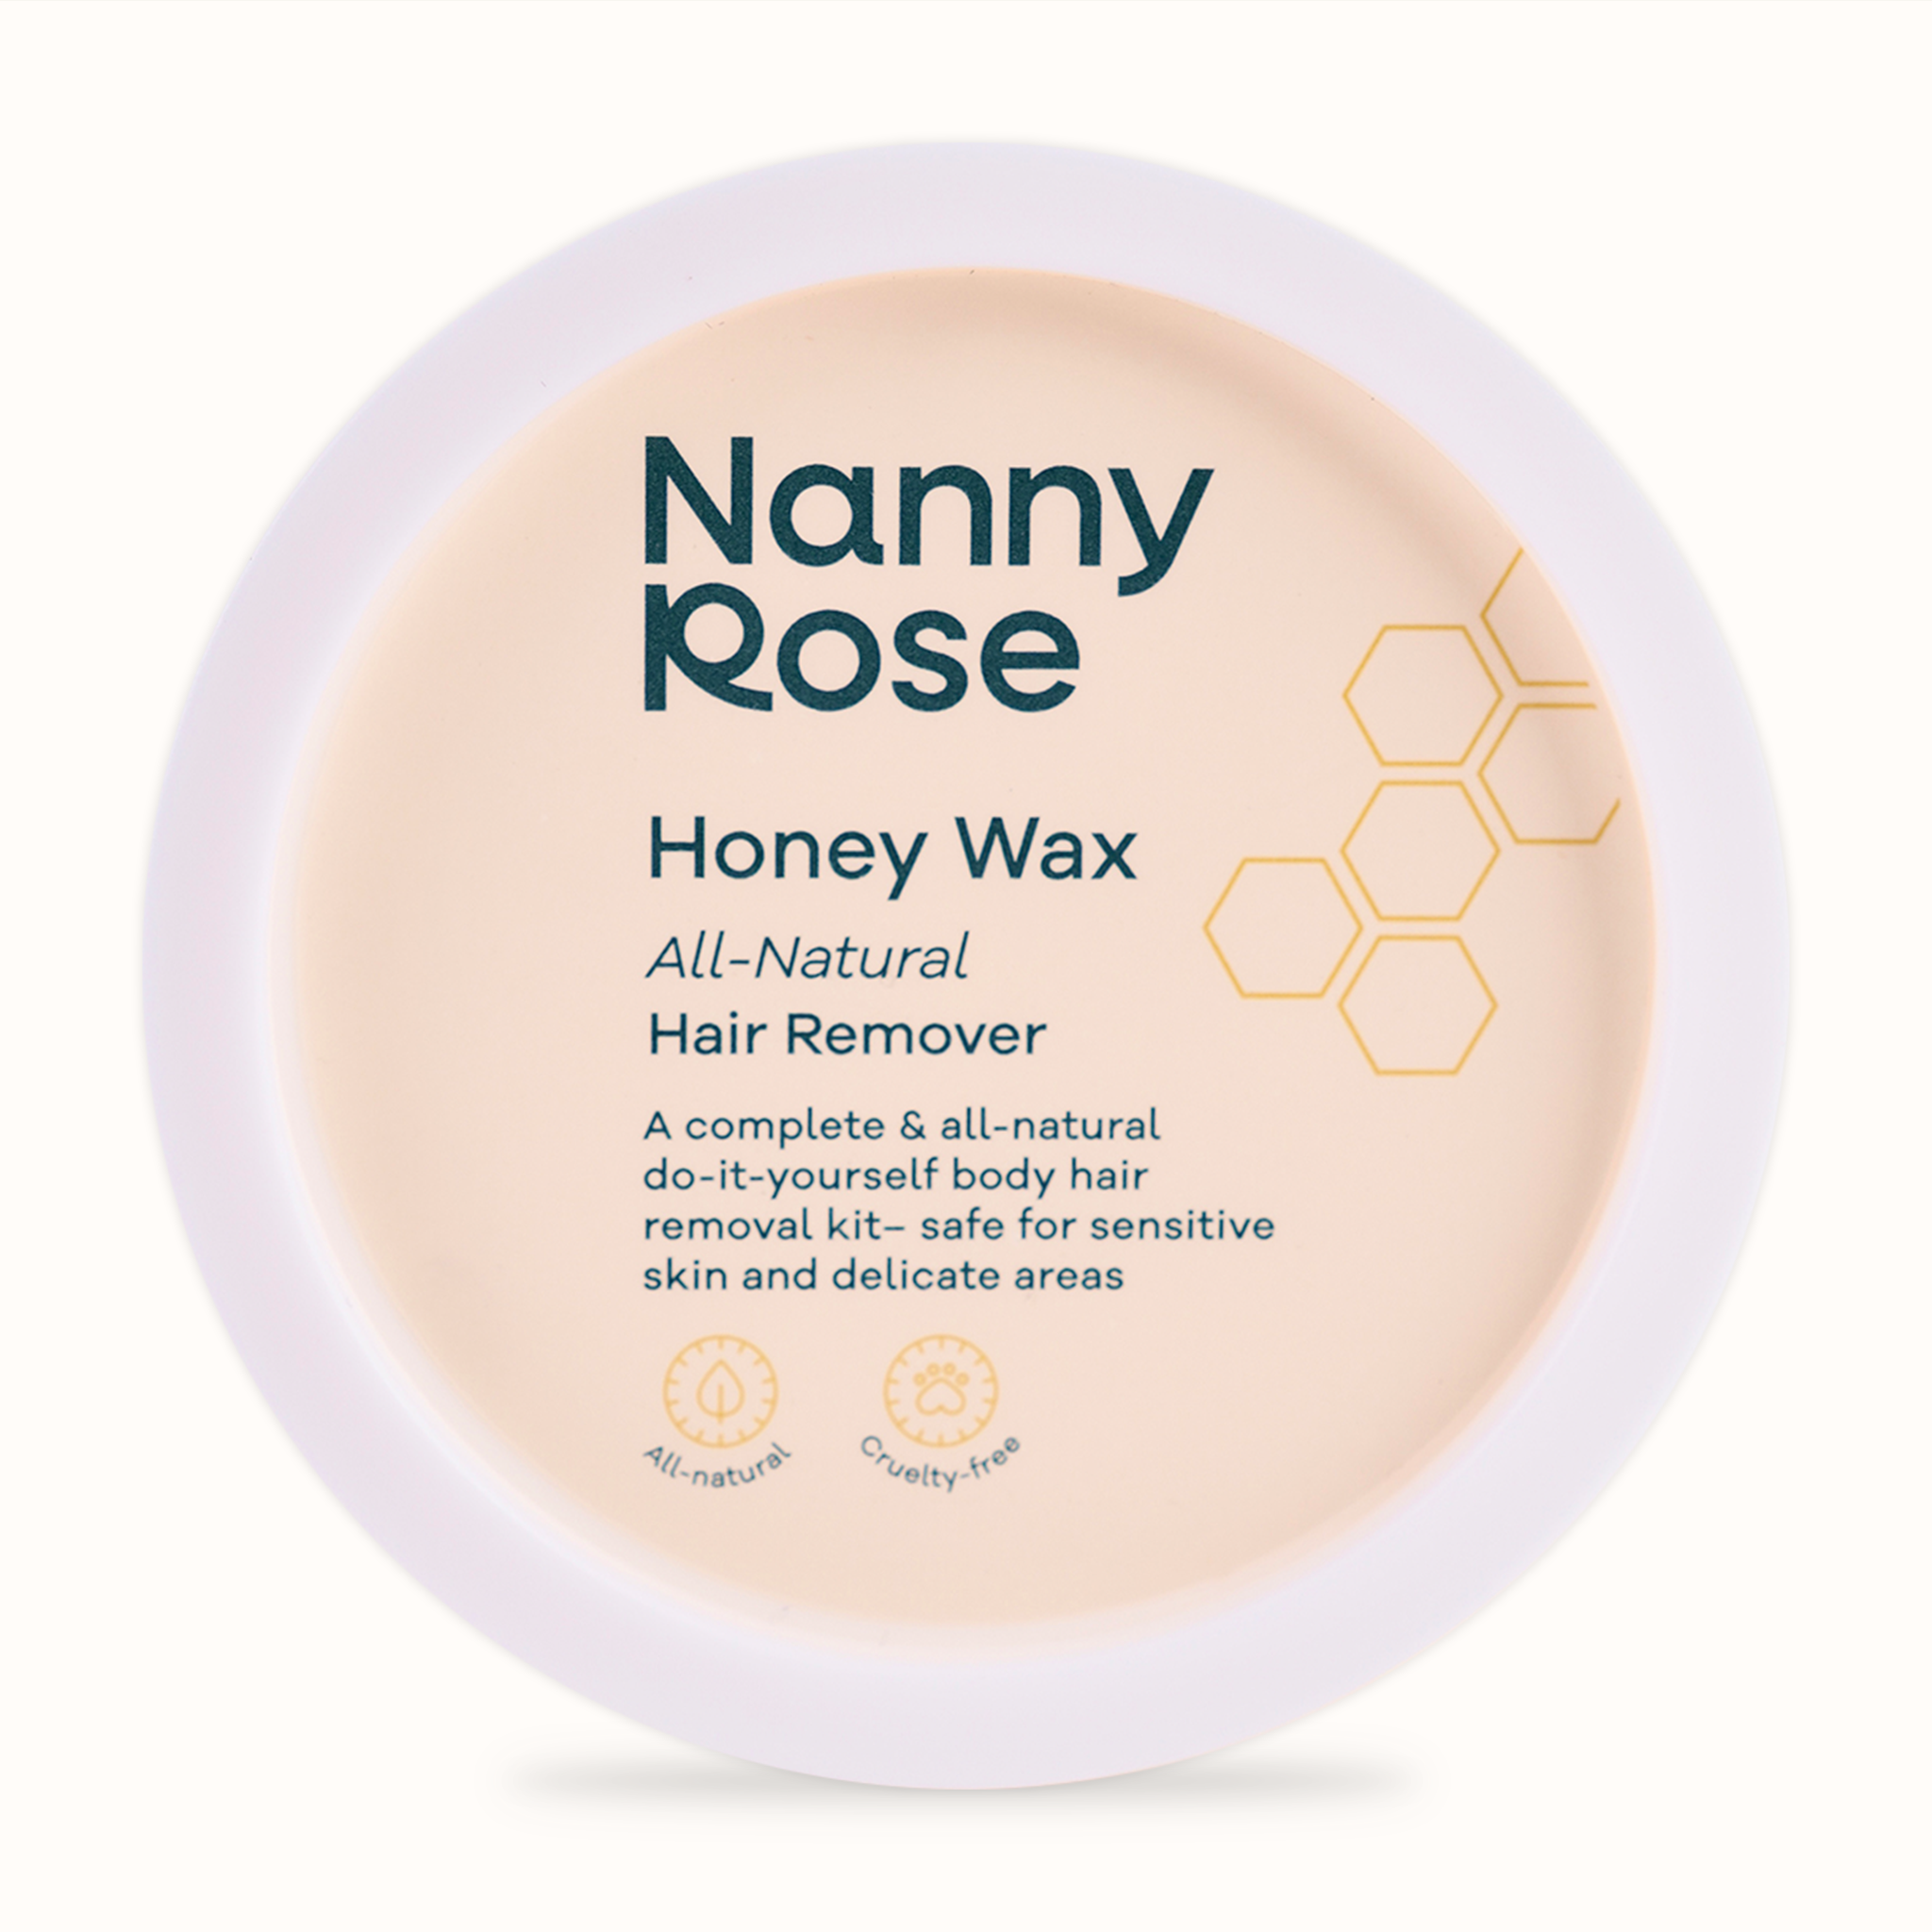 HONEY WAX ALL-NATURAL HAIR REMOVER – Nanny Rose